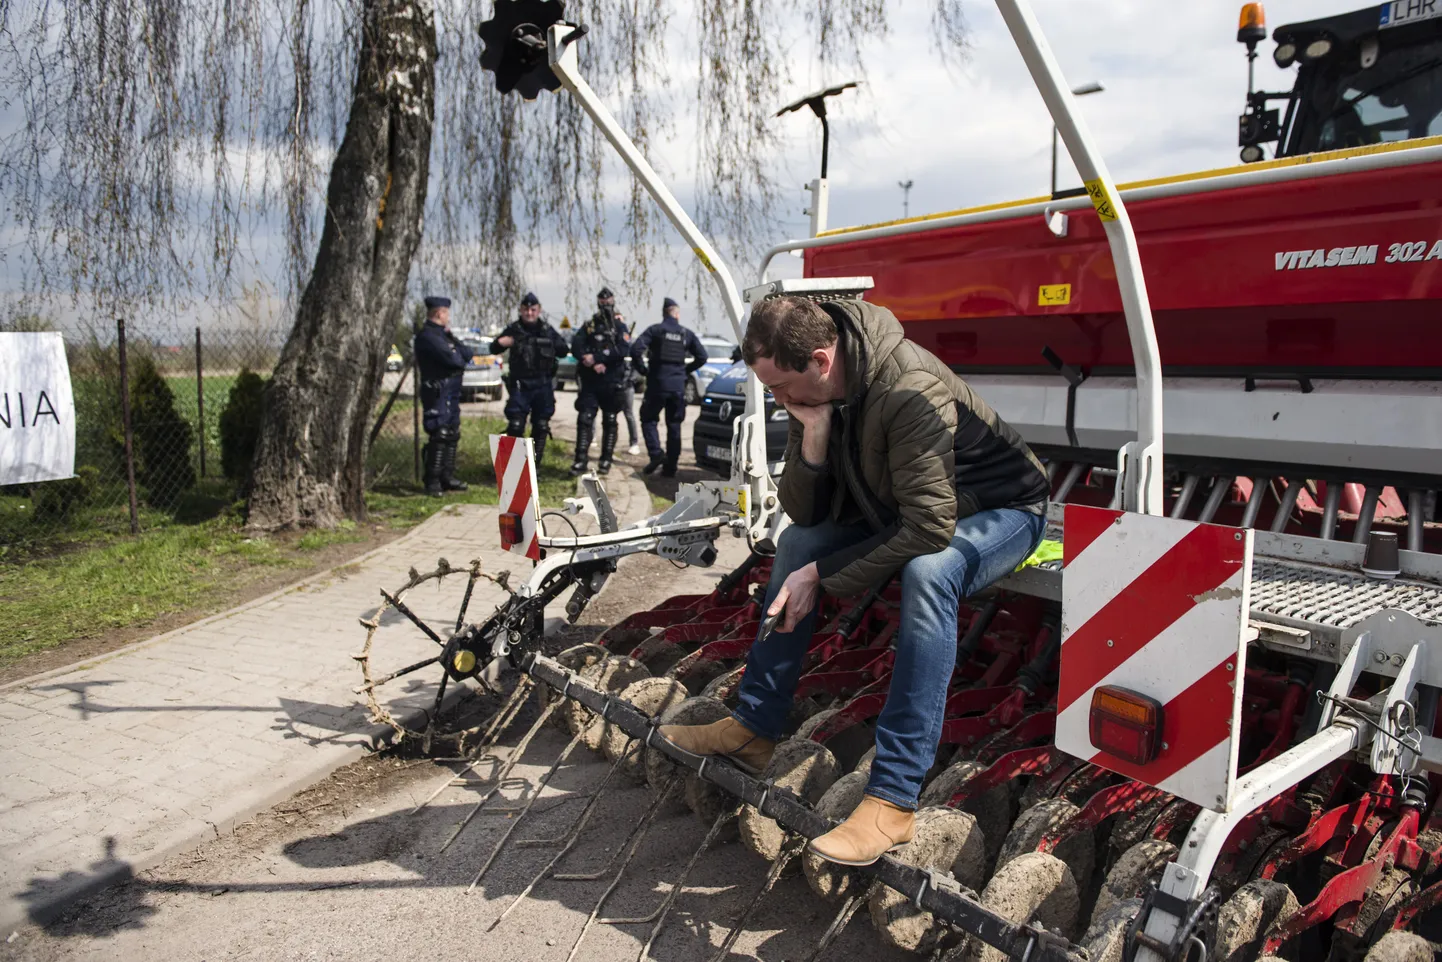 Poola põllumehed protestivad Ukraina viljaimpordi vastu.